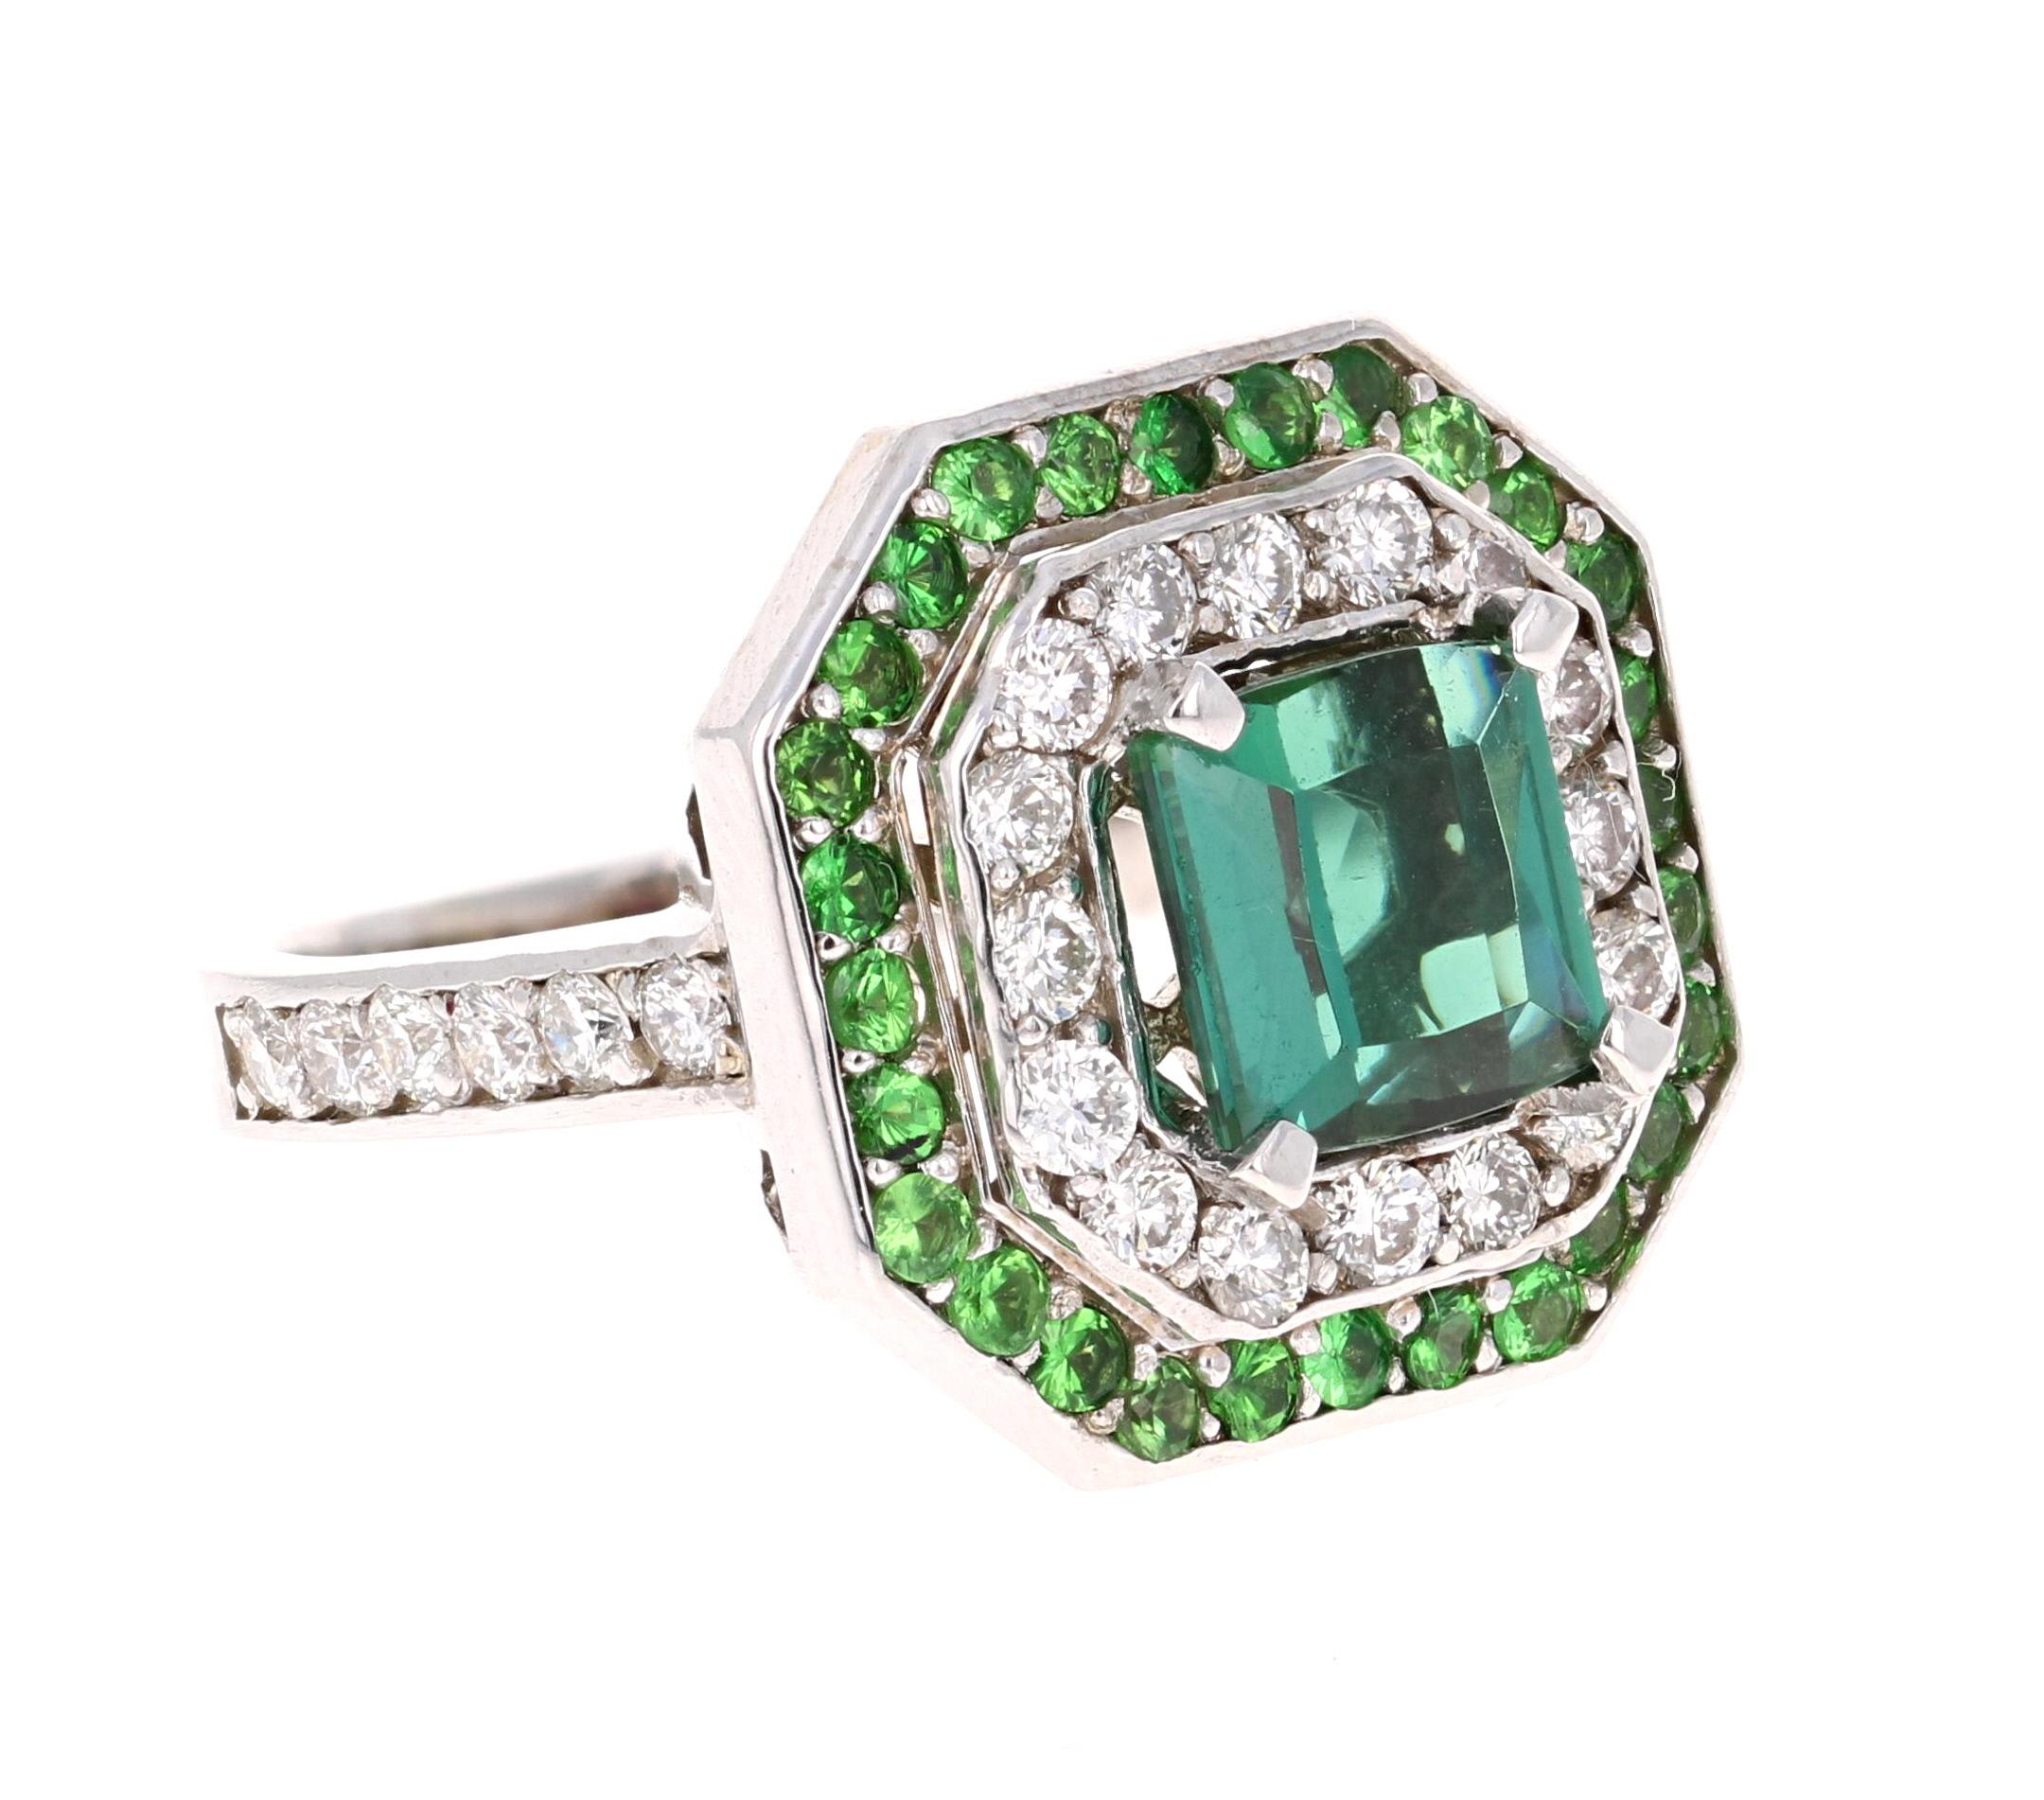 Eine Schönheit, die mit Sicherheit nichts weniger als ein Statement ist! 

Dieser Ring hat einen wunderschönen grünen Turmalin im Smaragdschliff mit einem Gewicht von 1,97 Karat und 28 Diamanten im Rundschliff mit einem Gewicht von 0,90 Karat und